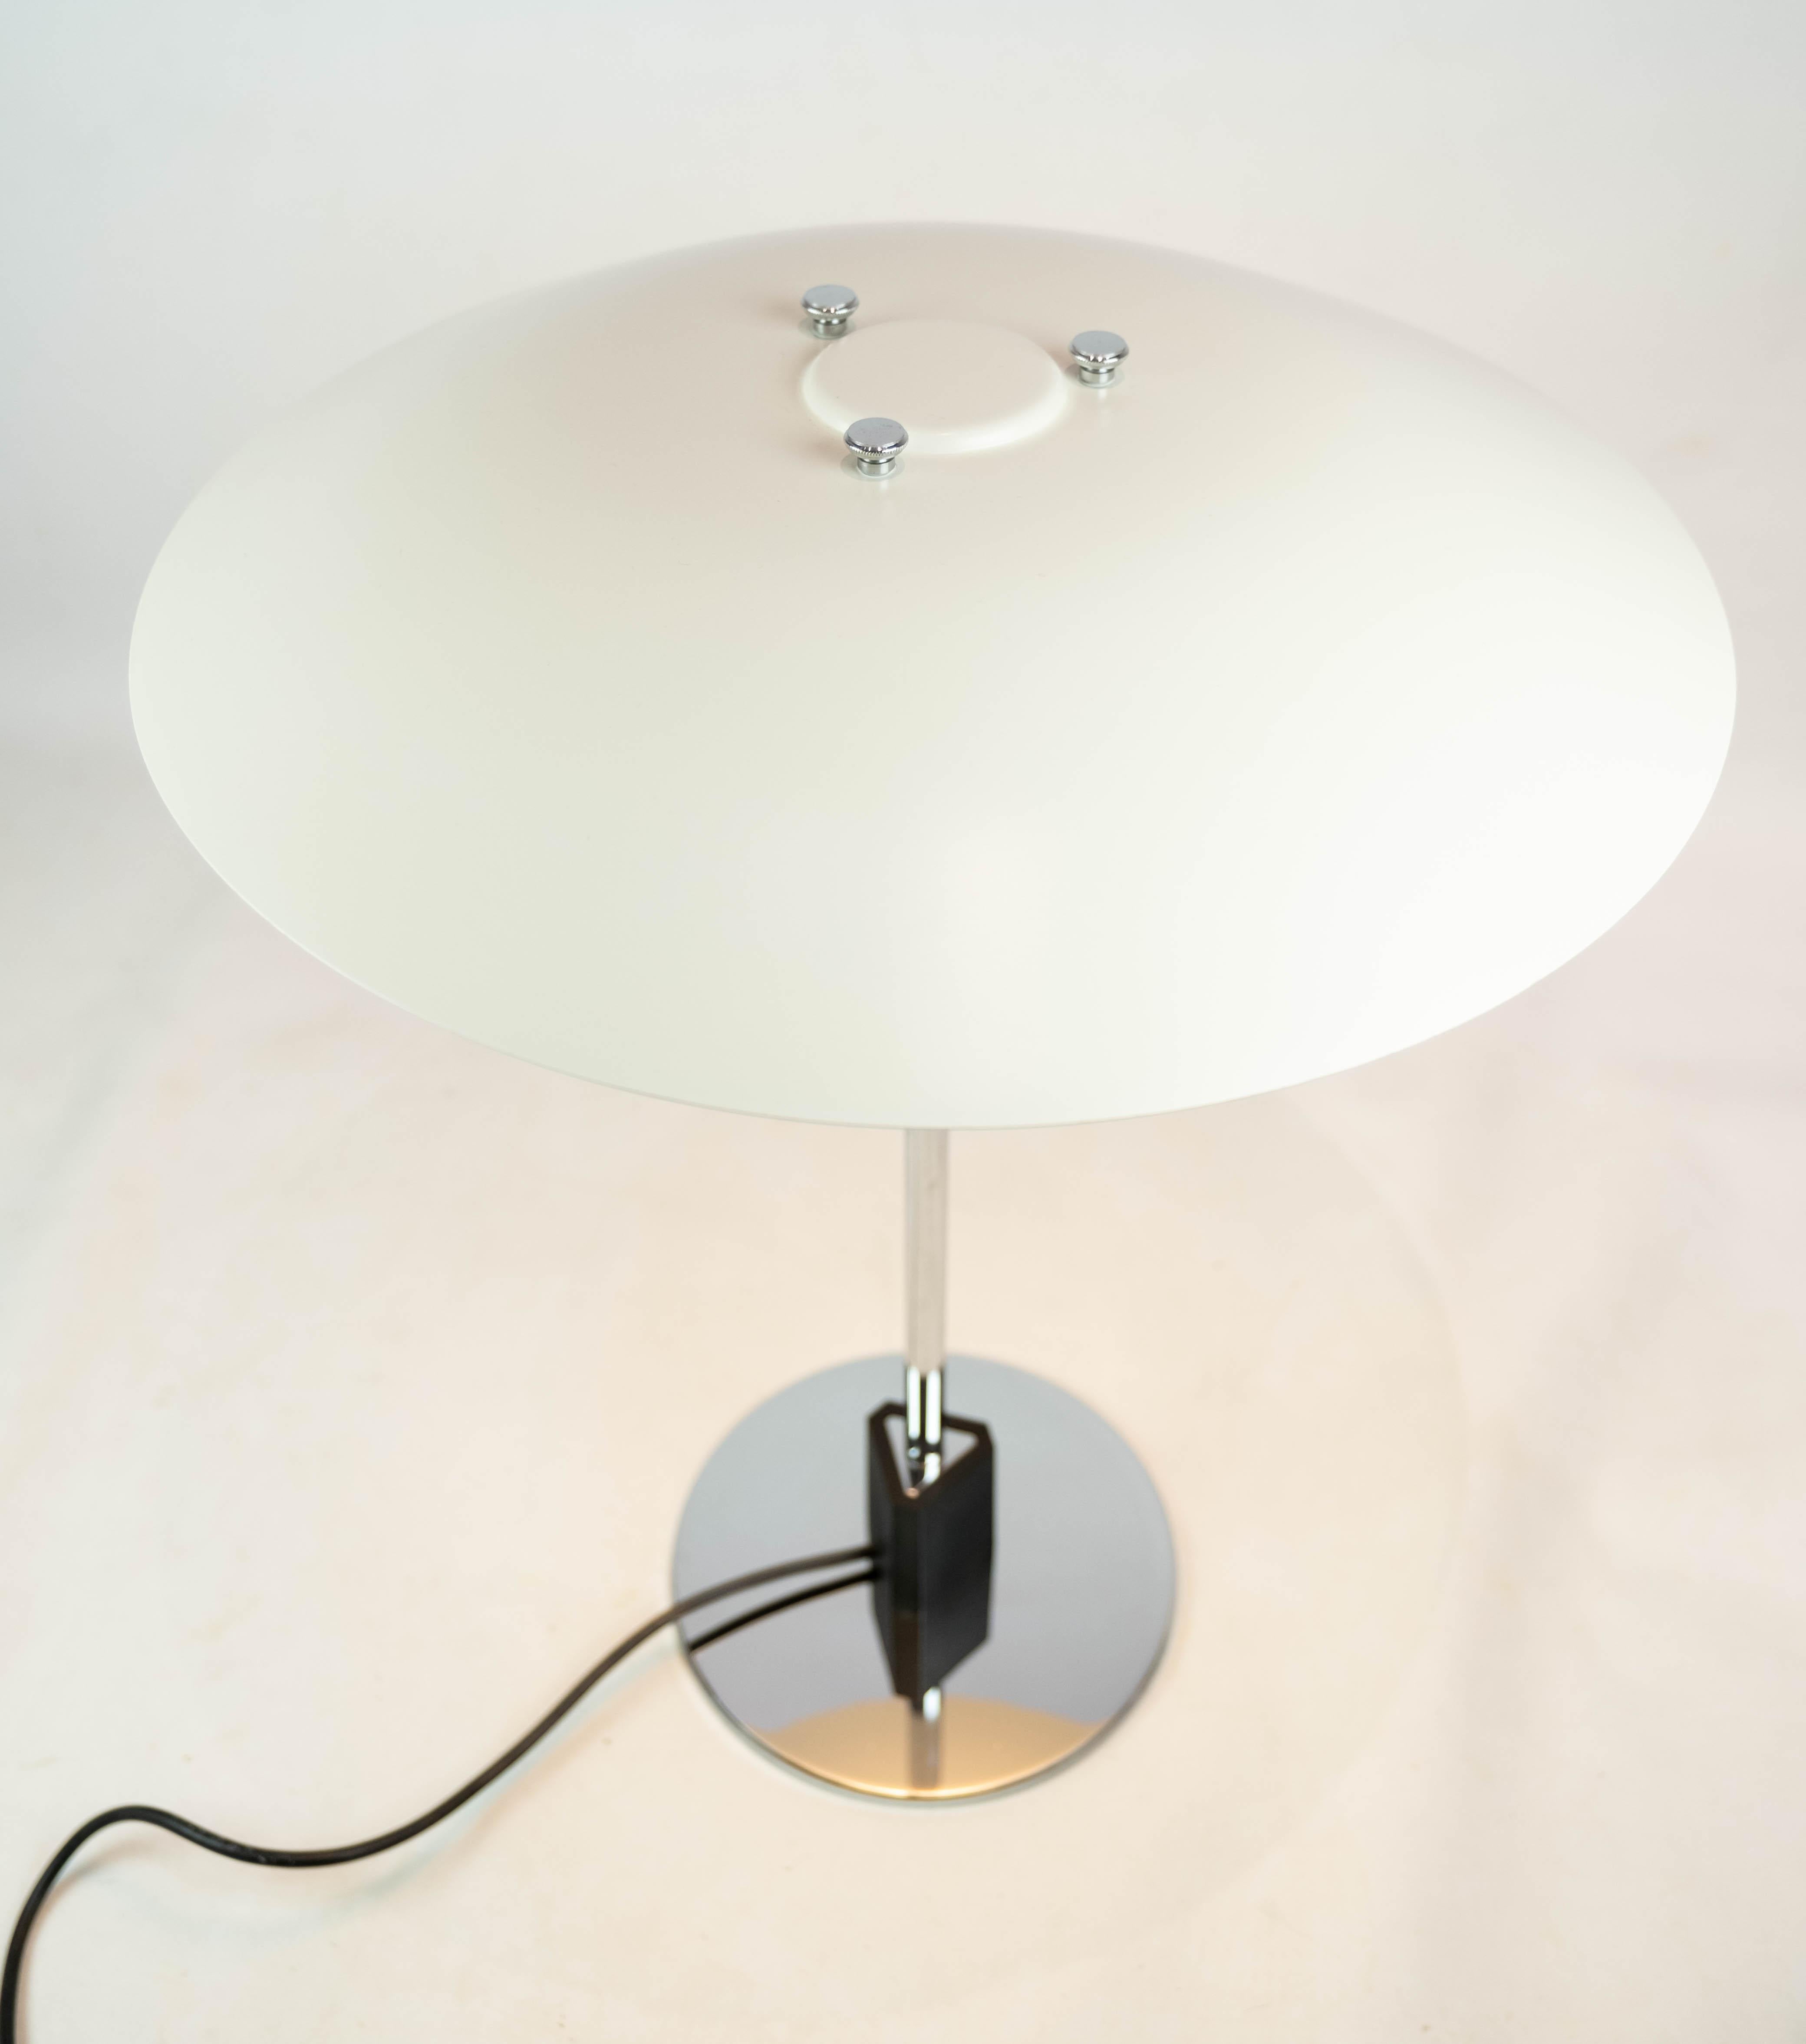 PH 4/3 Tischleuchte, entworfen von Poul Henningsen und hergestellt von Louis Poulsen. Die Lampe ist mit weiß lackierten Metallschirmen ausgestattet.